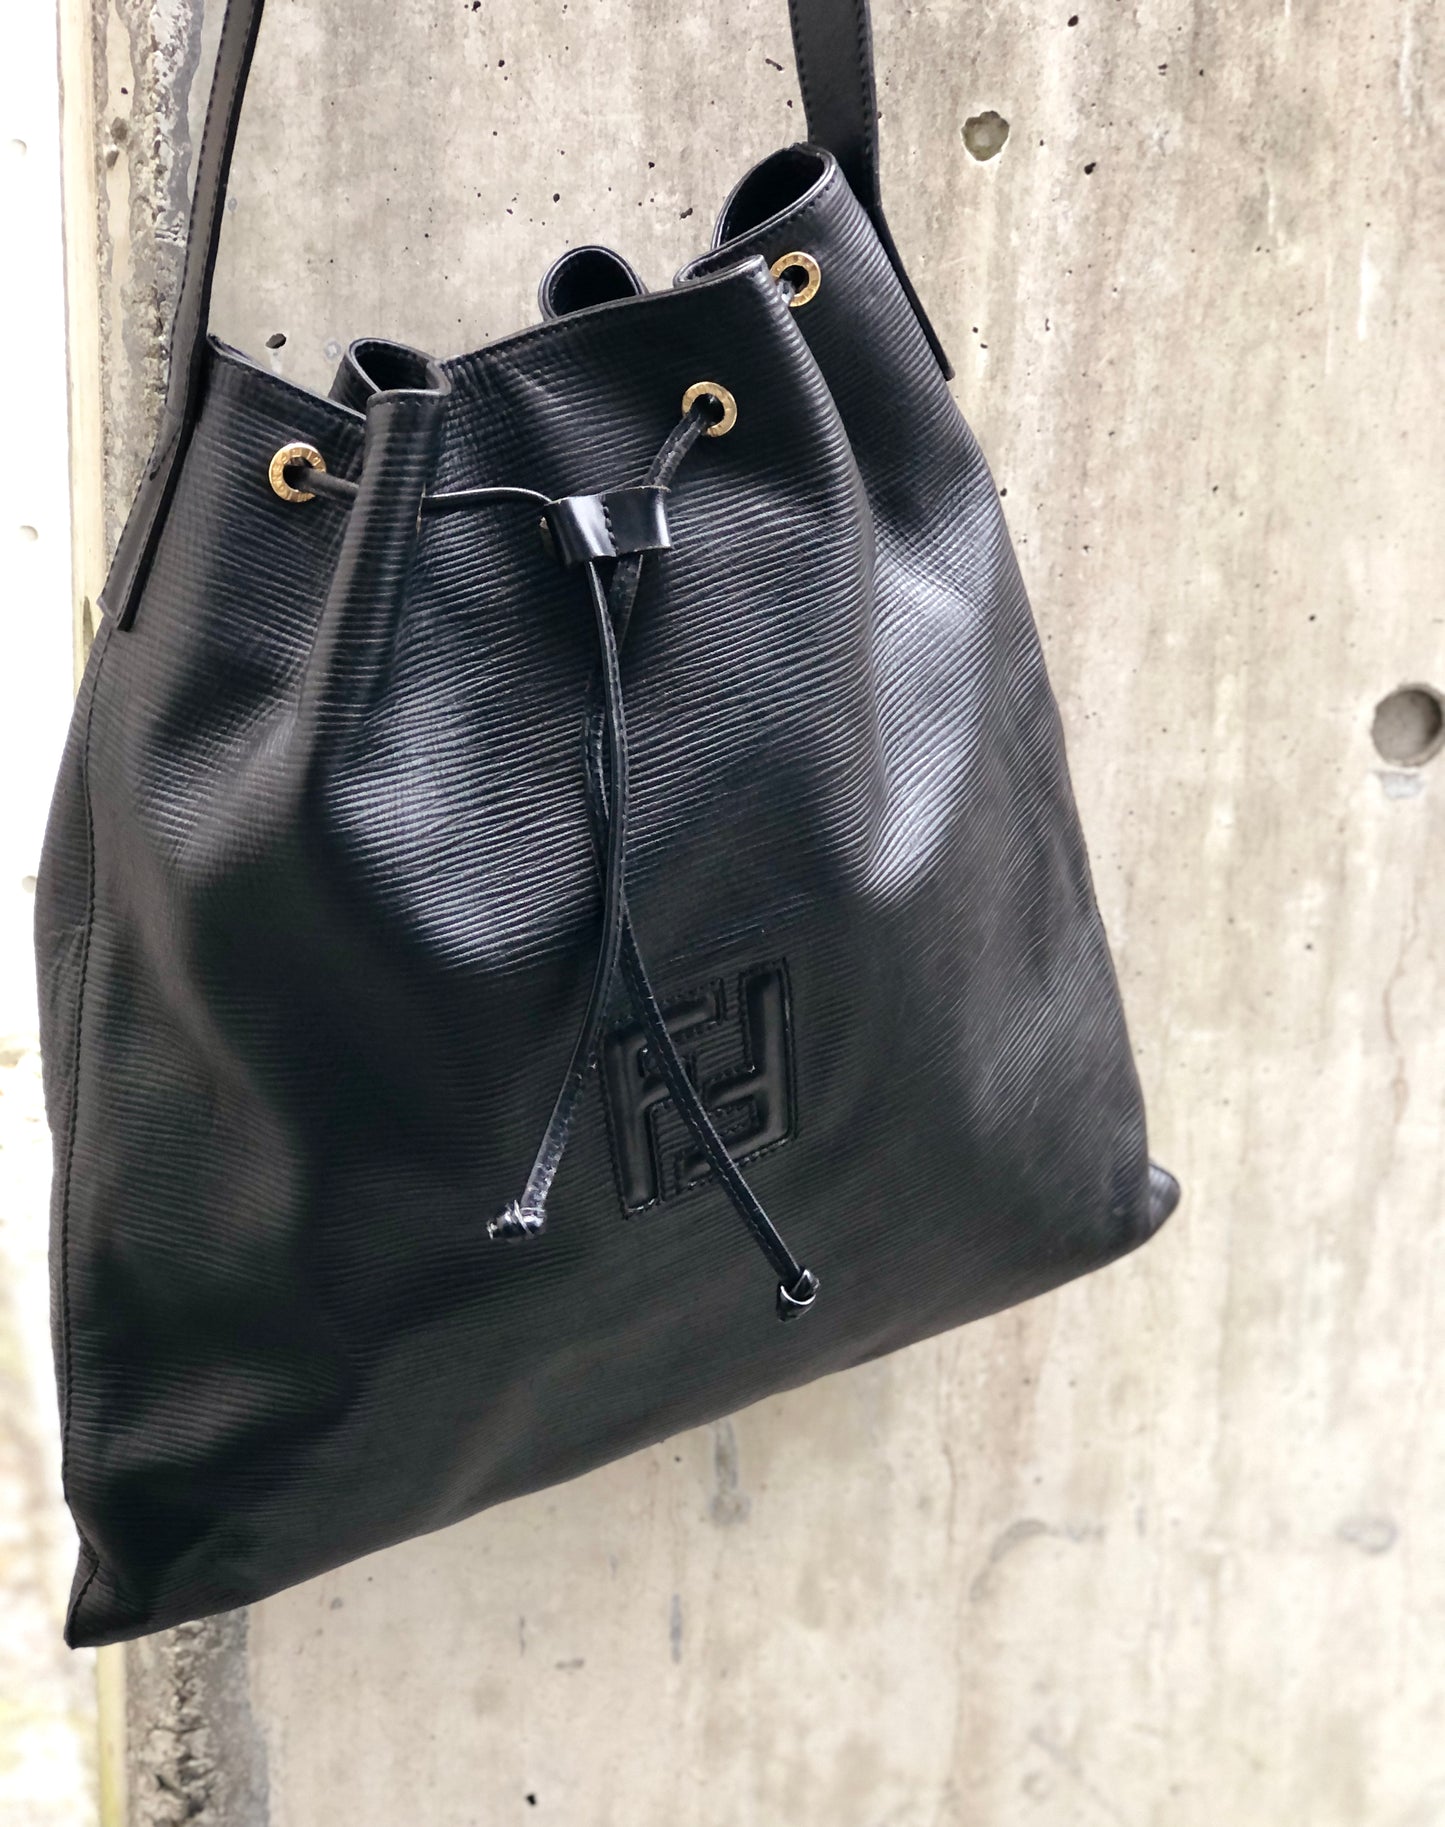 FENDI Emboss Logo Leather Drawstring Shoulder bag Black Vintage Old x38wc2